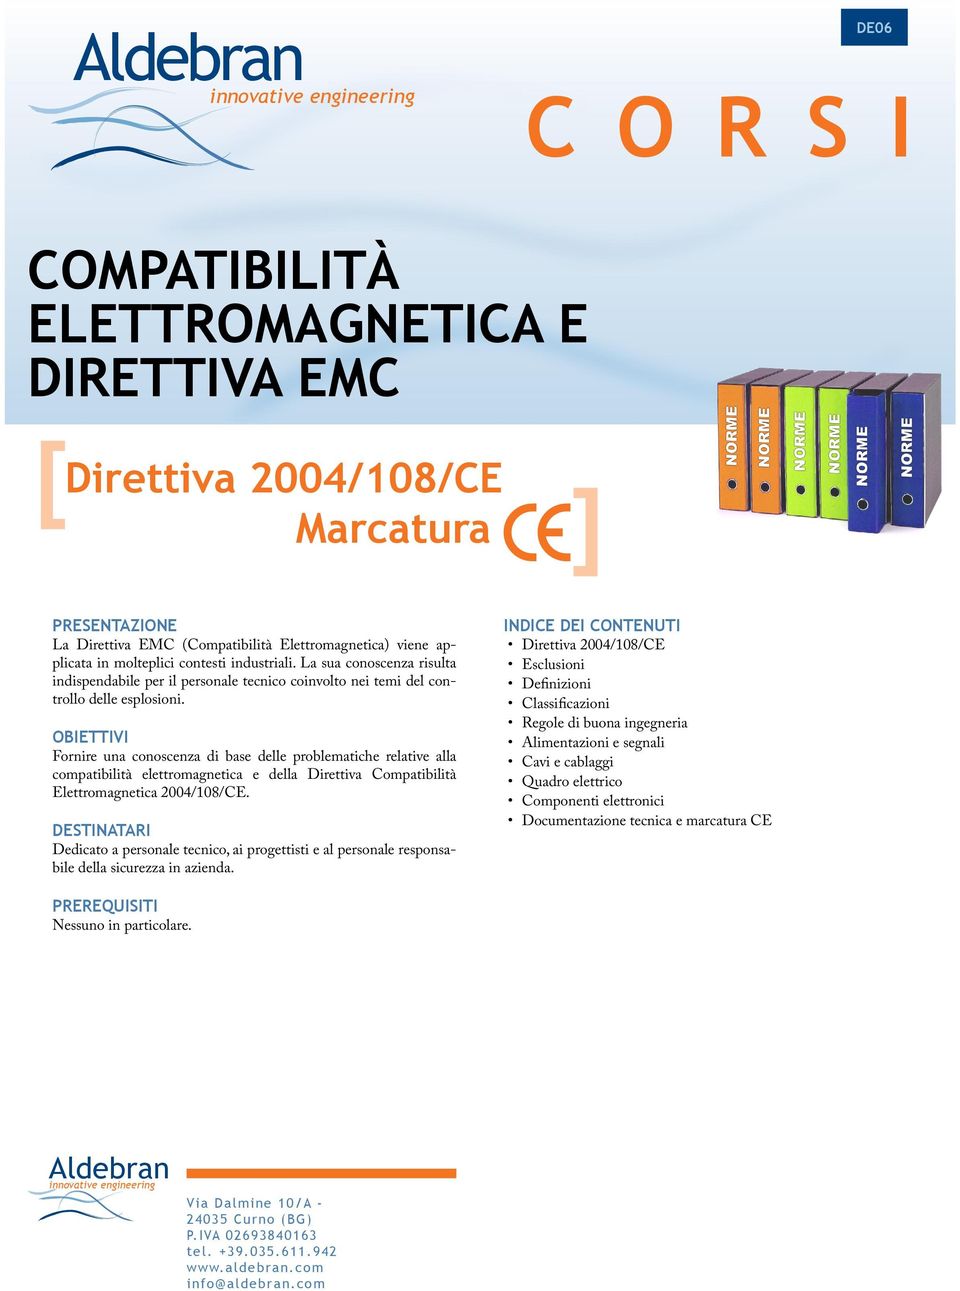 Fornire una conoscenza di base delle problematiche relative alla compatibilità elettromagnetica e della Direttiva Compatibilità Elettromagnetica 2004/108/CE.